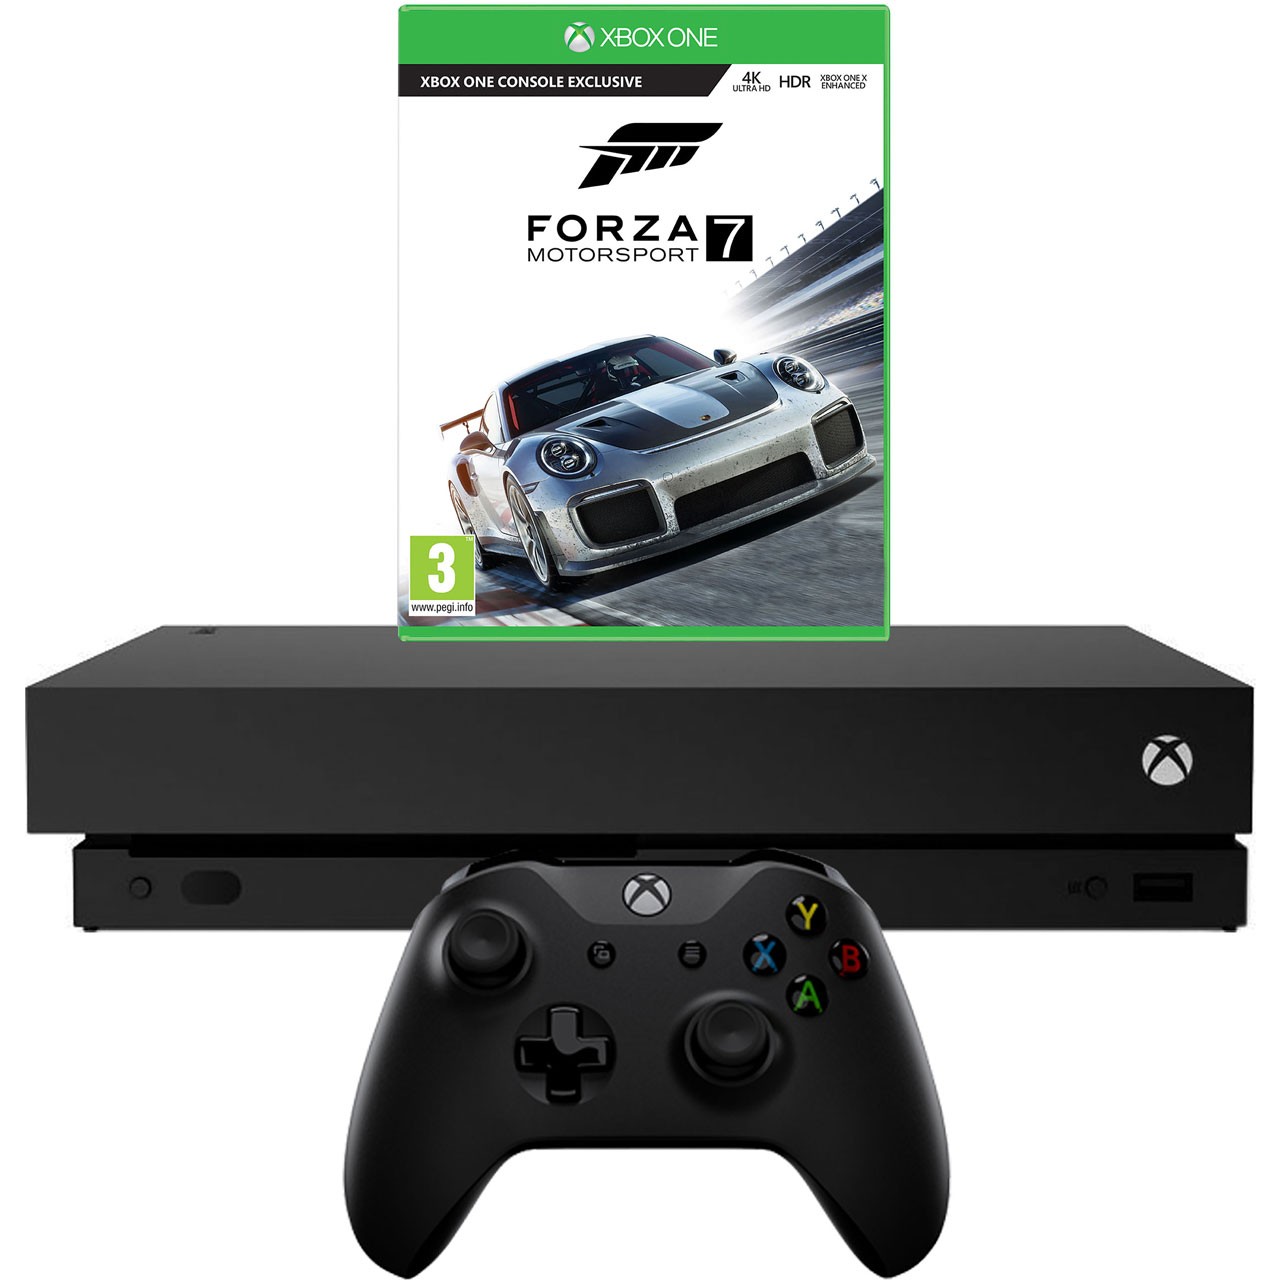 Xbox One X 1 TB - Forza Motorsport 7 Bundle